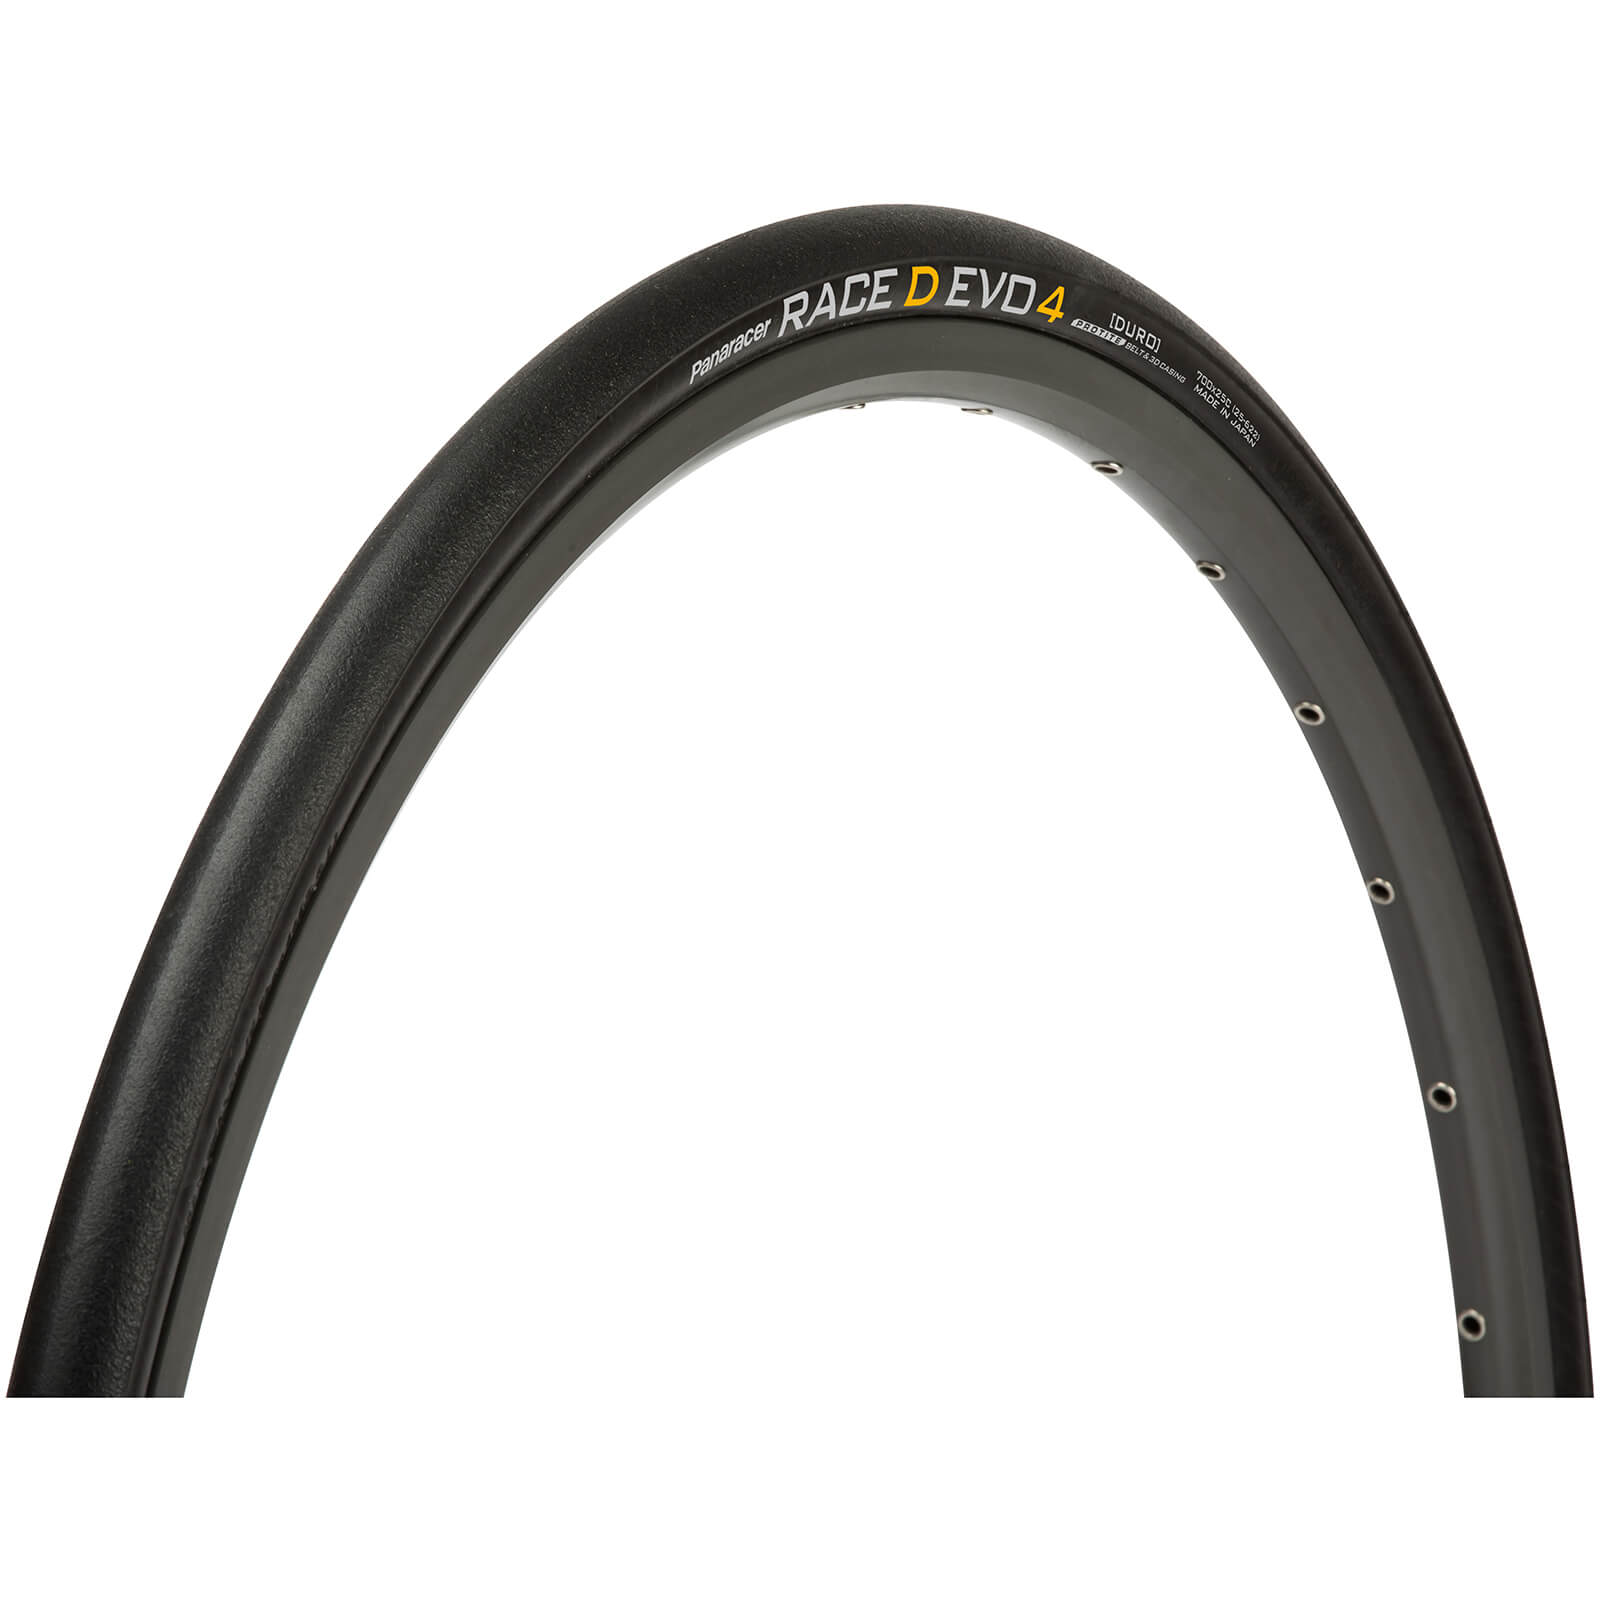 Panaracer Race D Evo 4 Folding Road Tire - 700 x 25C - BLACK/BLACK